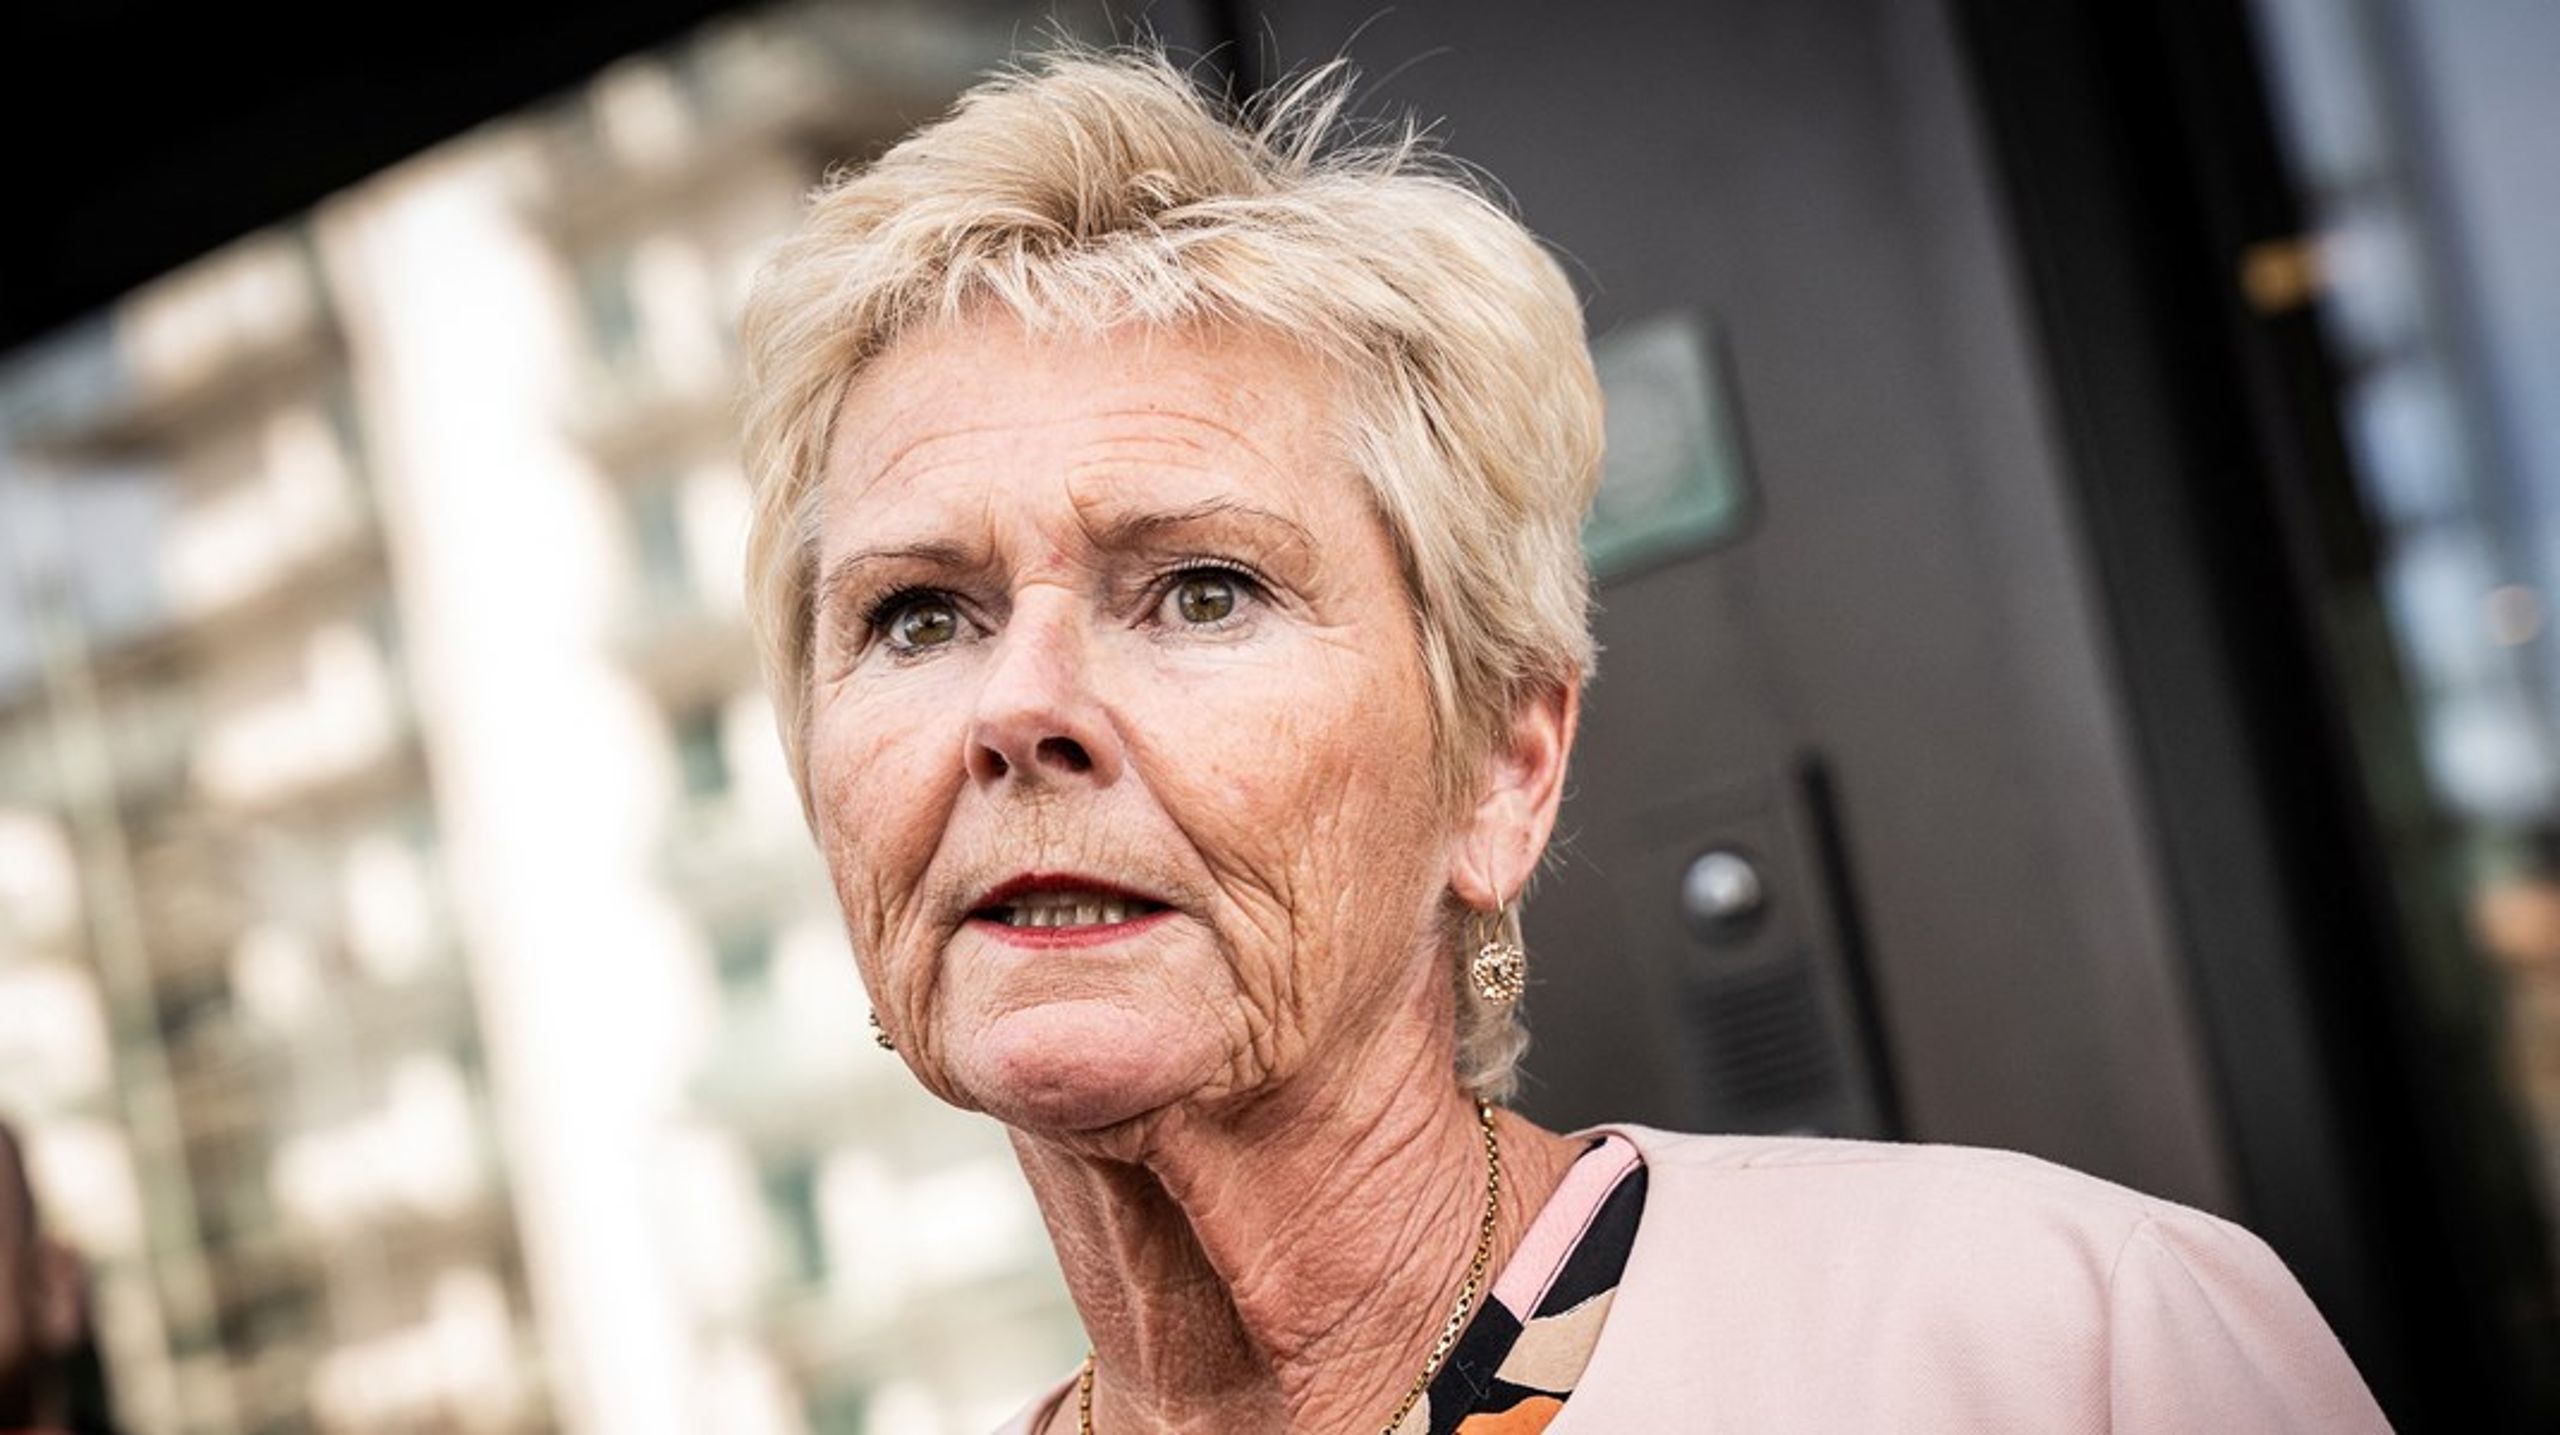 Lizette Risgaard har hatt en av de absolutte toppostene i dansk fagbevegelse. Nå har hun trukket seg med umiddelbar virkning, etter at flere unge menn har anklaget henne for&nbsp;krenkende og upassende adferd.